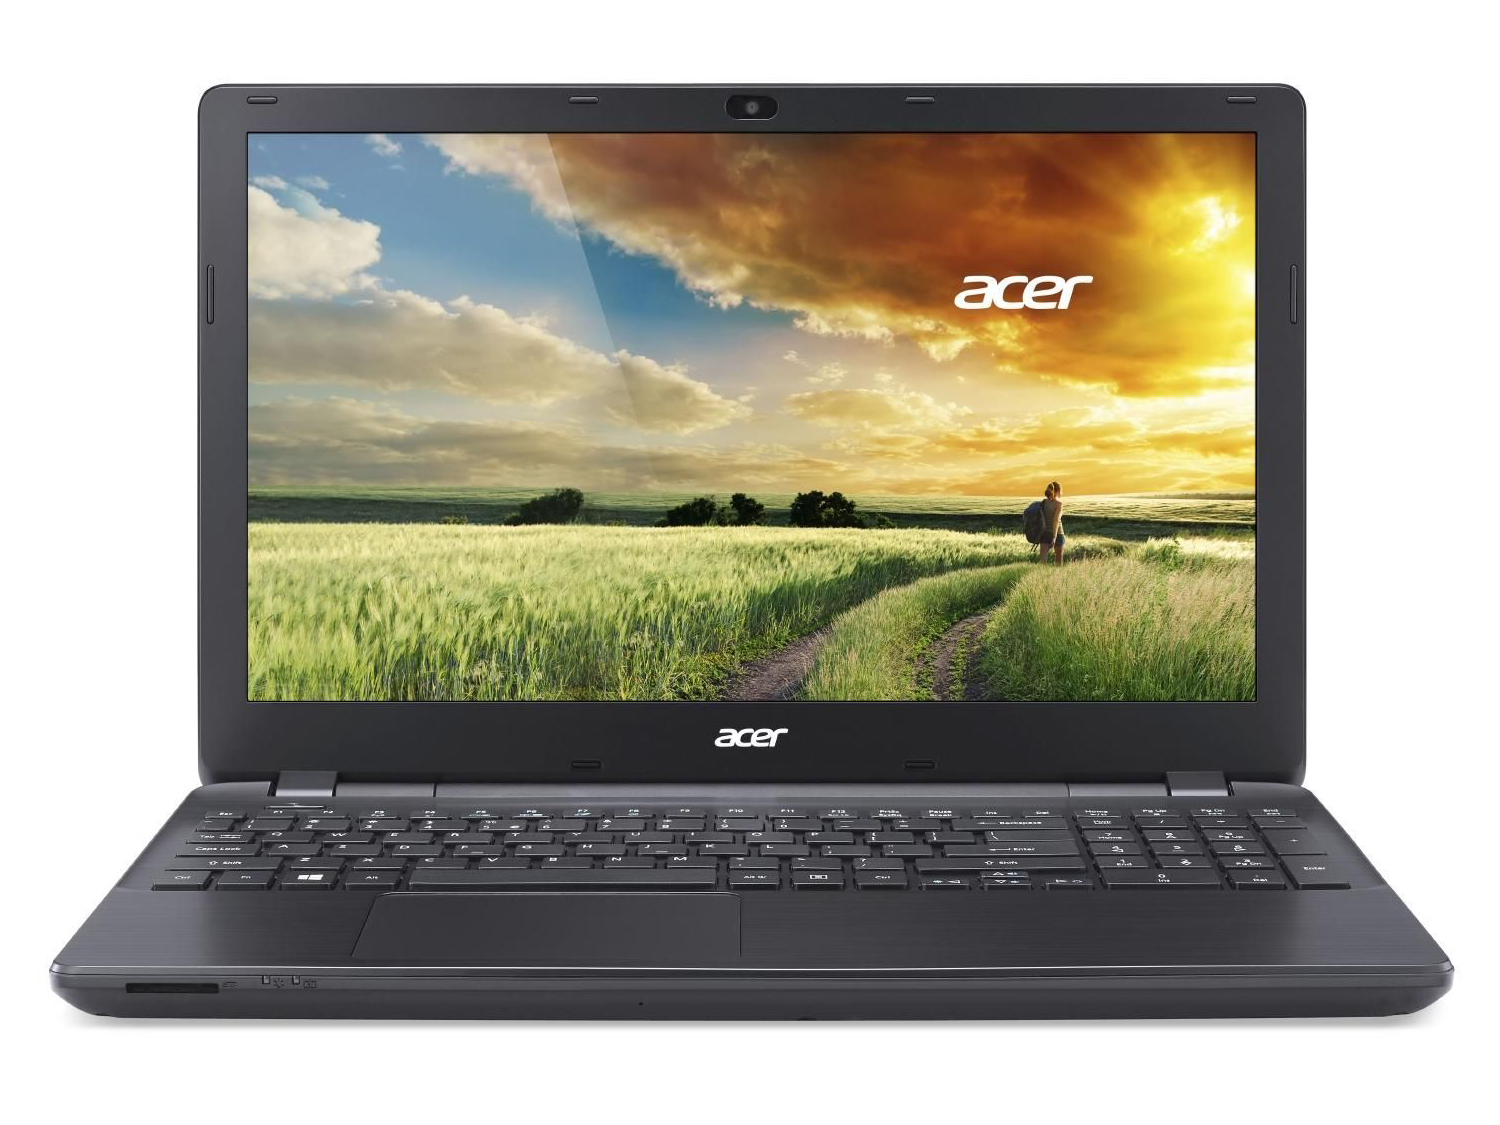 Review Acer Aspire E15: pret mic, performanta buna